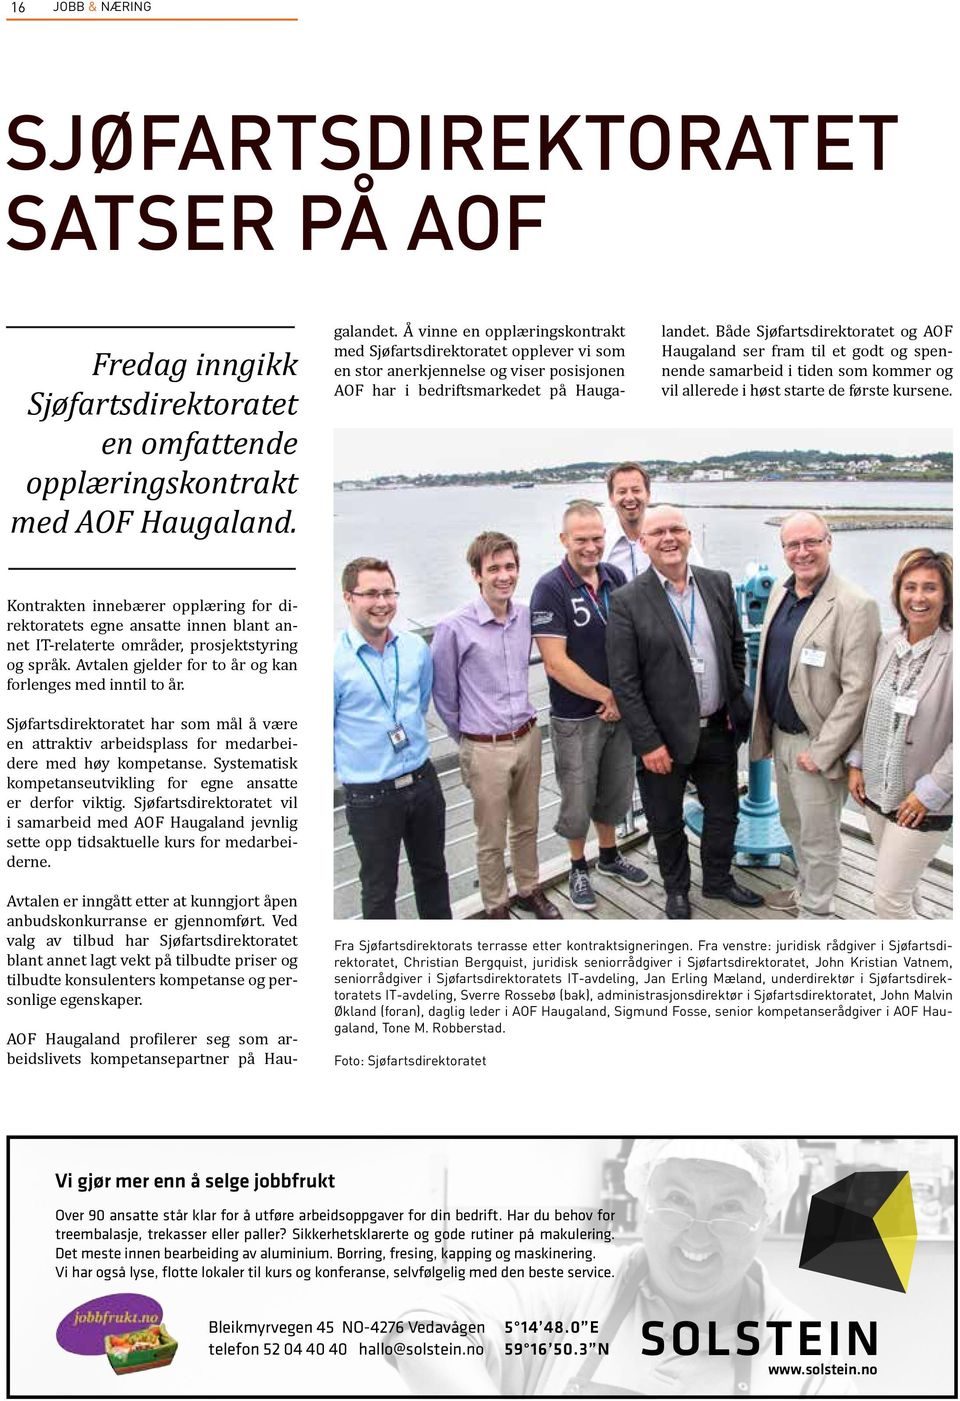 Å vinne en opplæringskontrakt med Sjøfartsdirektoratet opplever vi som en stor anerkjennelse og viser posisjonen AOF har i bedriftsmarkedet på Haugalandet.